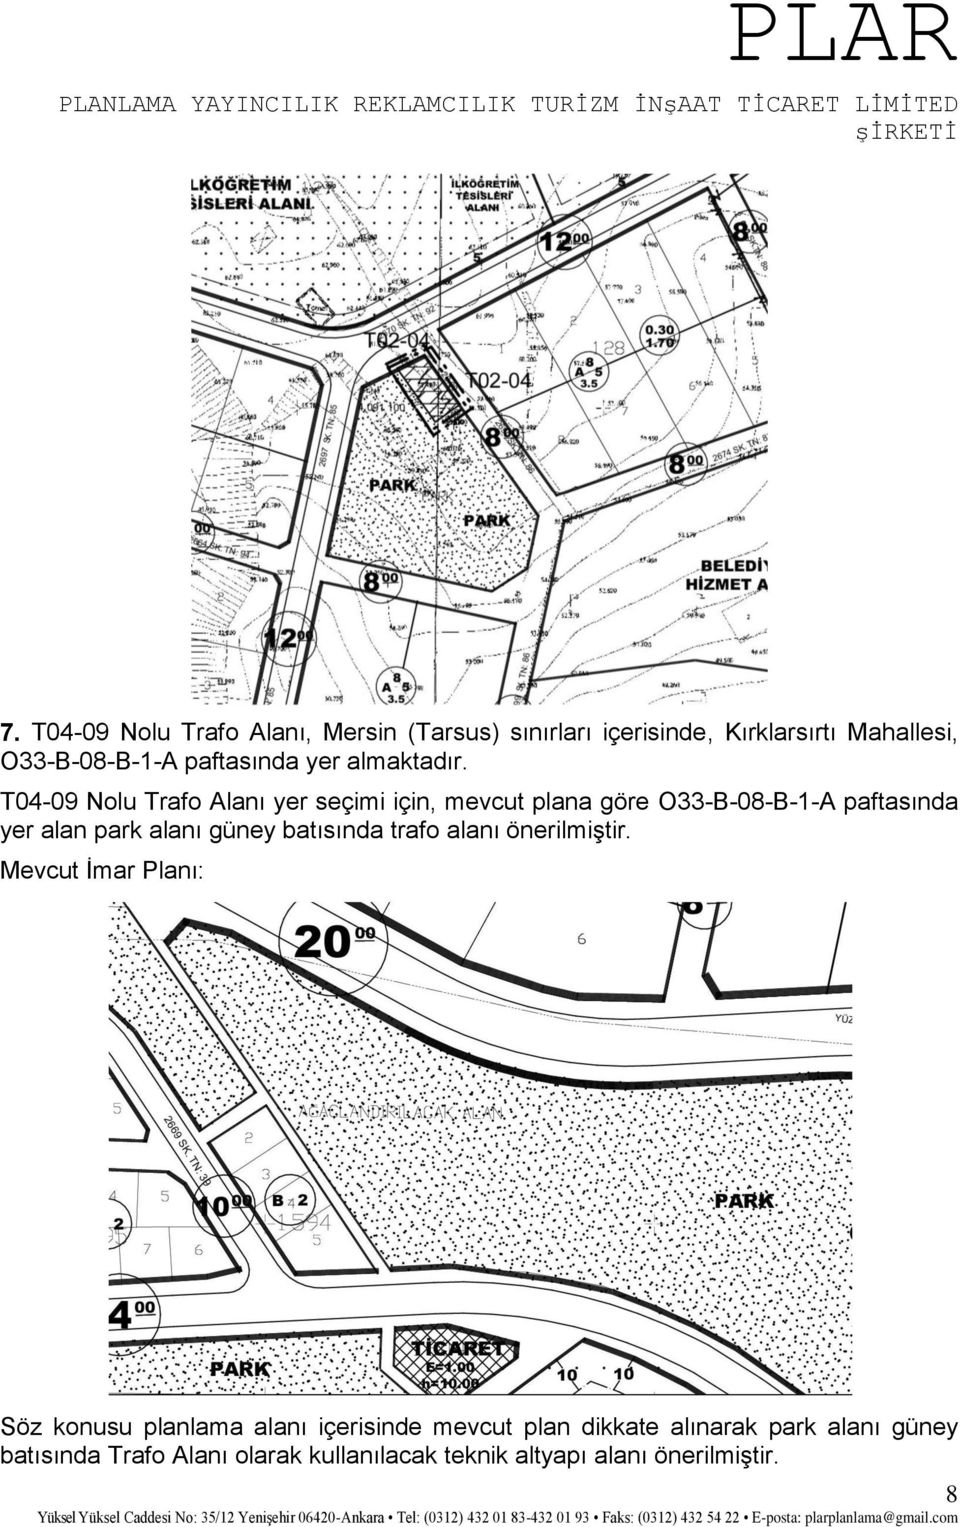 T04-09 Nolu Trafo Alanı yer seçimi için, mevcut plana göre O33-B-08-B-1-A paftasında yer alan park alanı